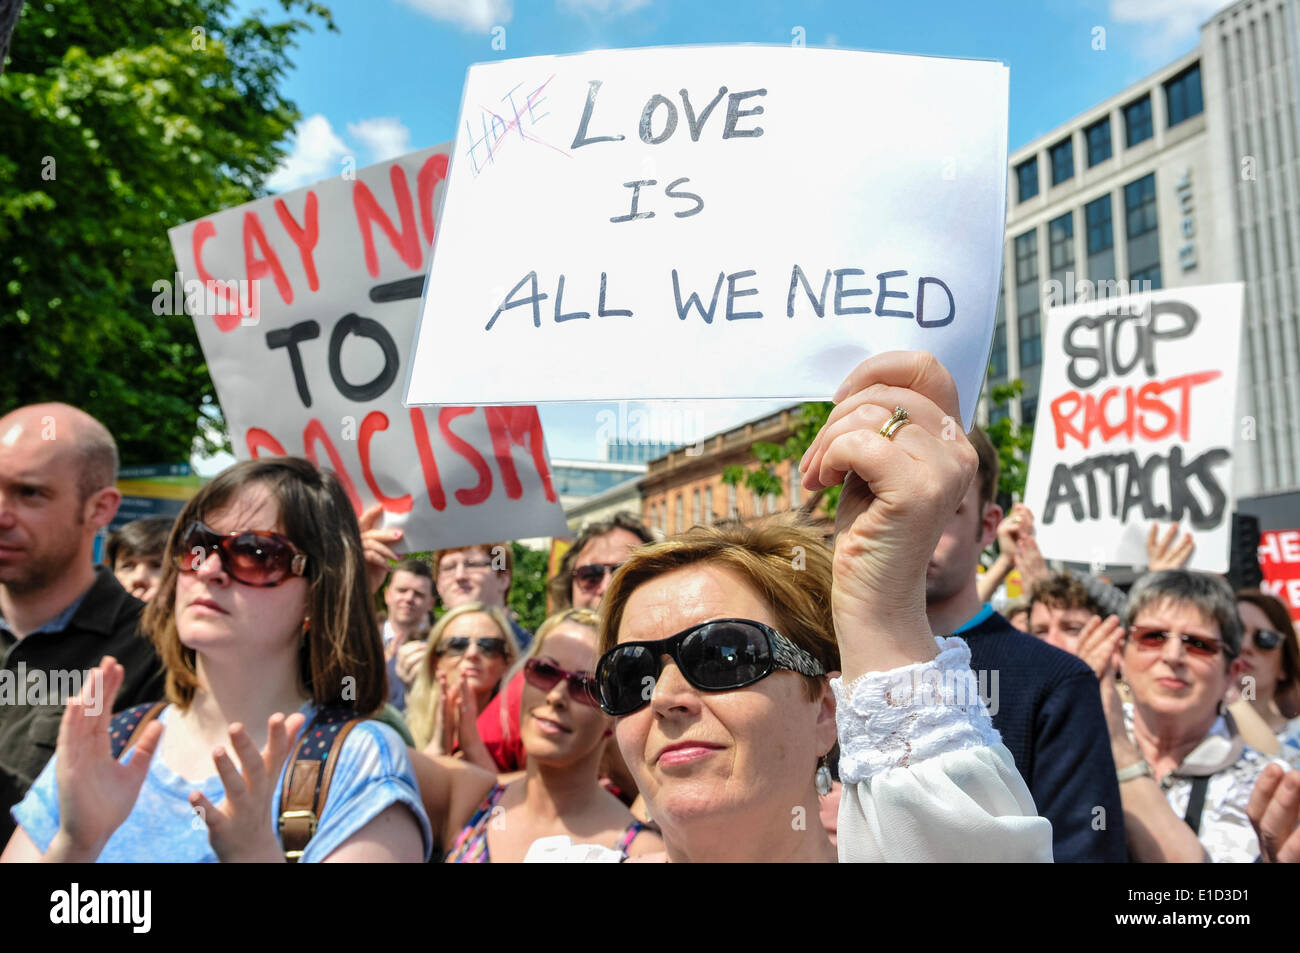 Belfast, Nordirland. 31. Mai 2014 - eine Frau hält ein Plakat, die sagen: "Liebe ist alles was wir brauchen" Credit: Stephen Barnes/Alamy Live News Stockfoto